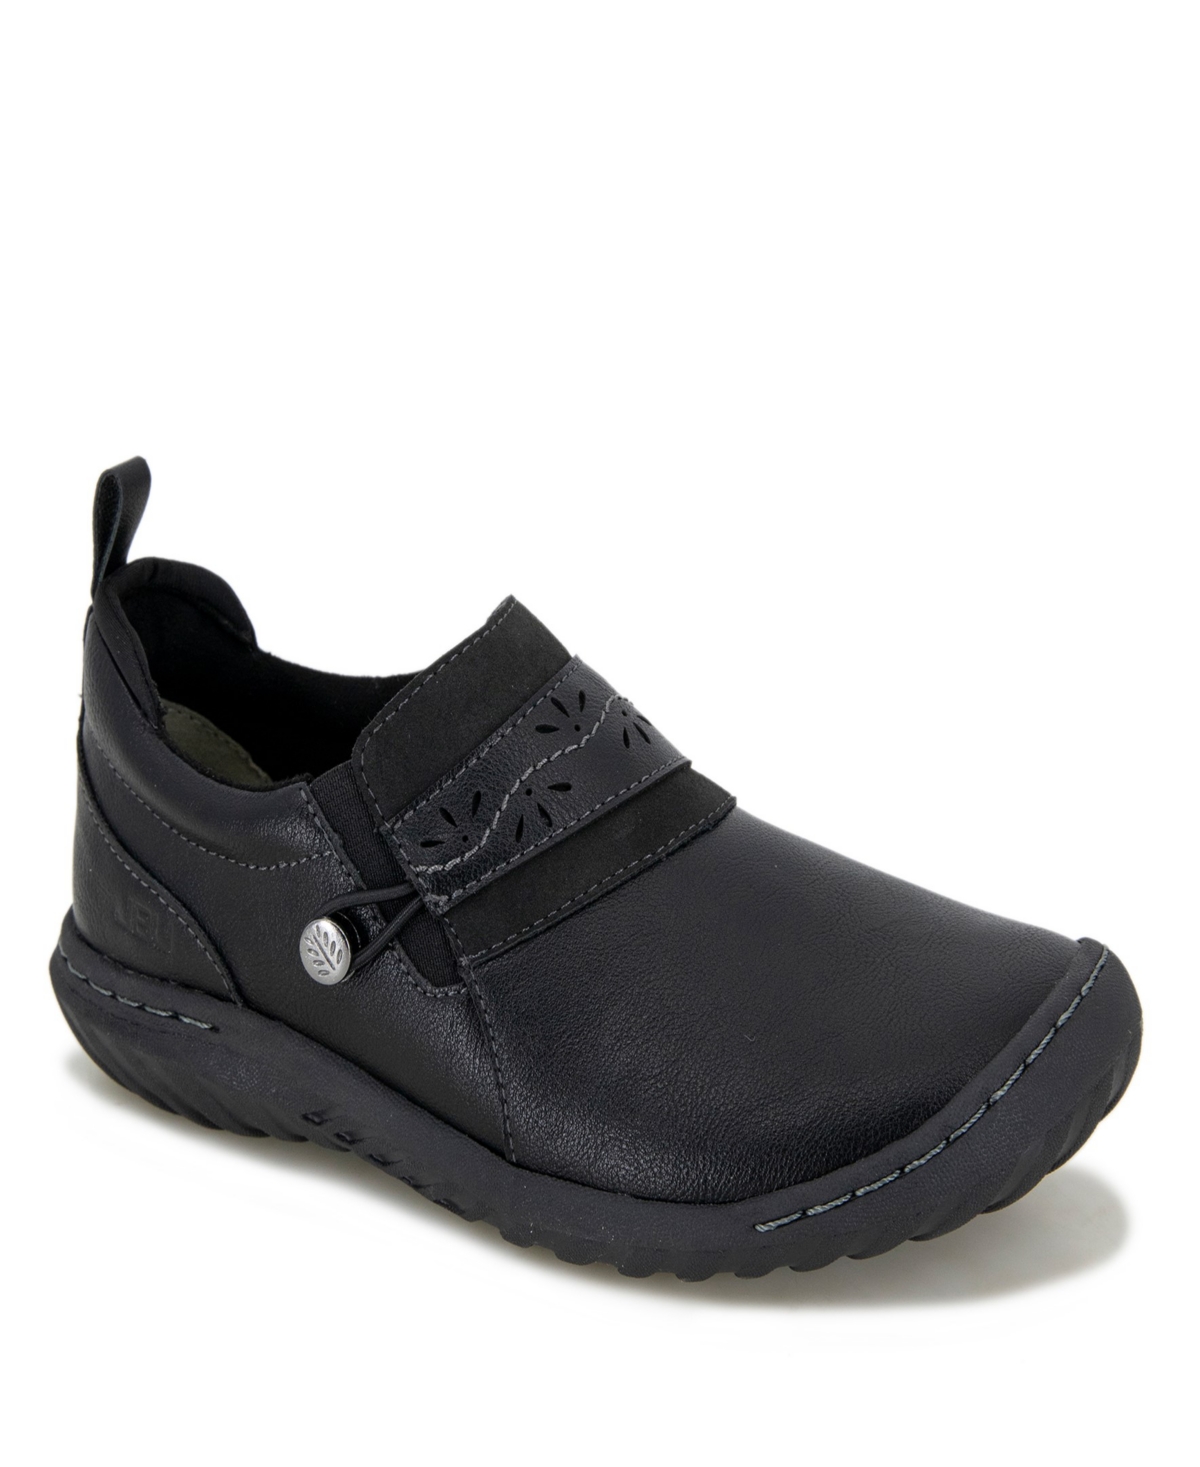 Women's Fern Casual Moc Shoe - Black